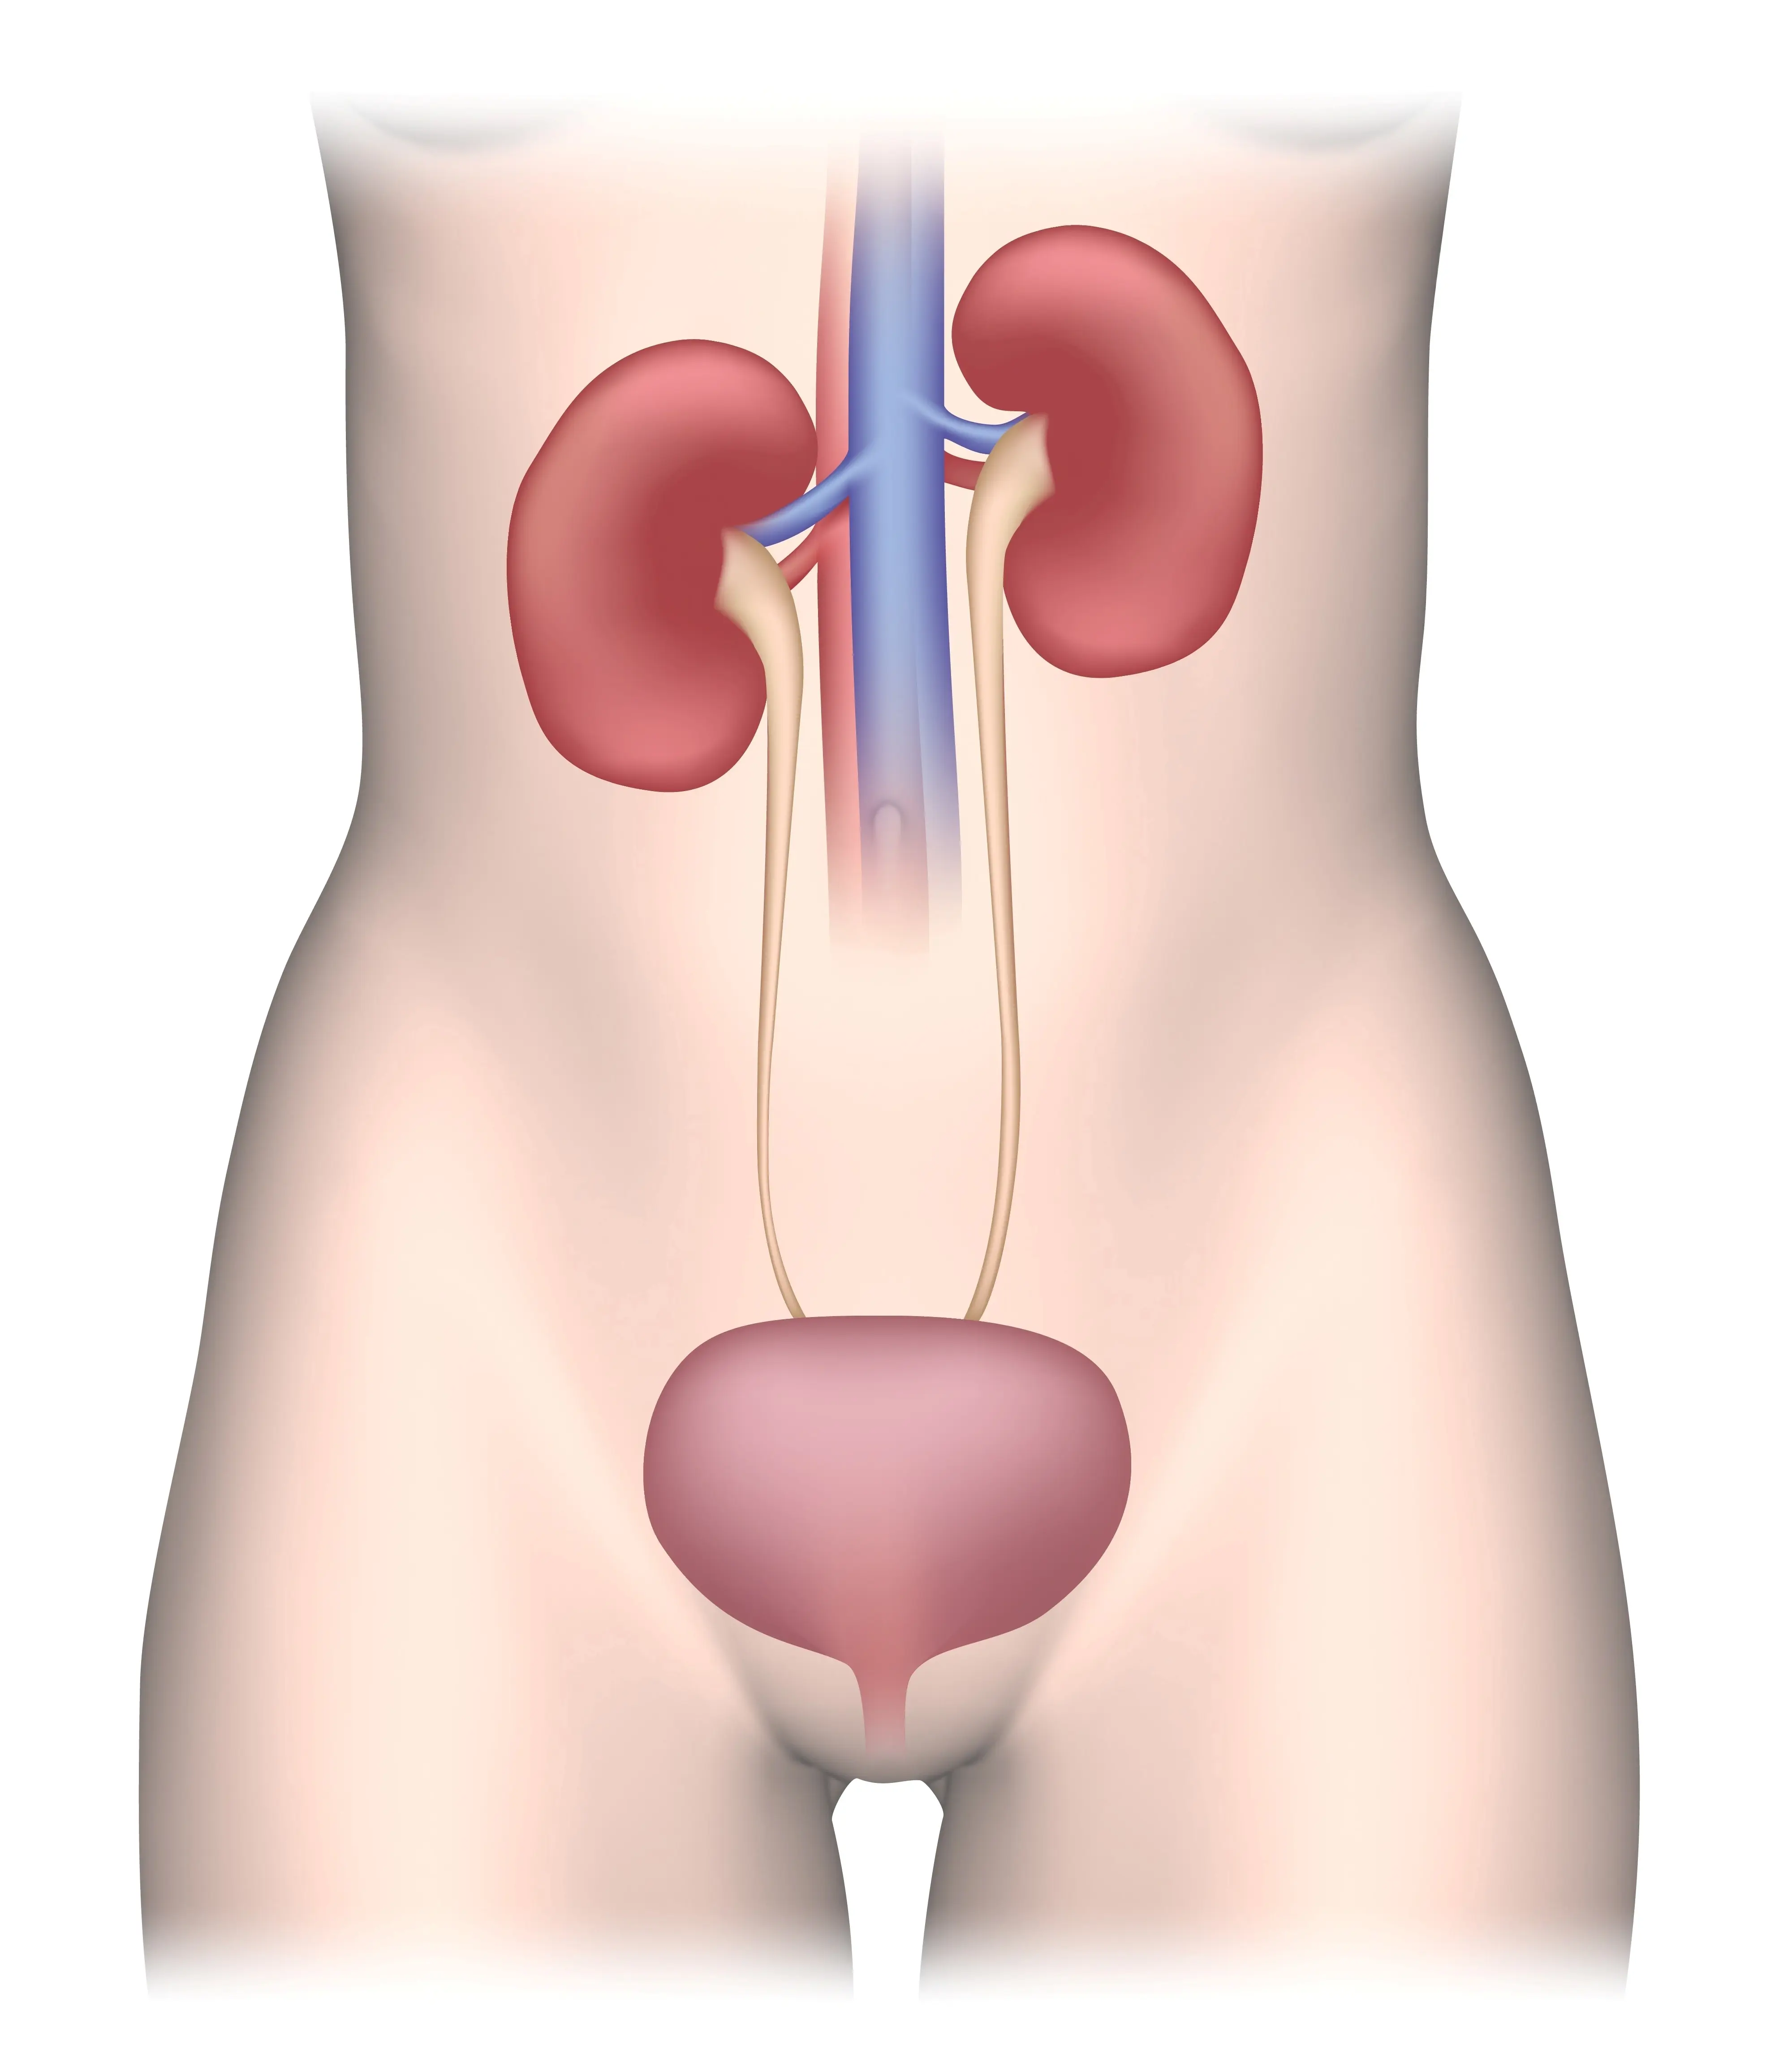 Urinewegsysteem of urinestelsel